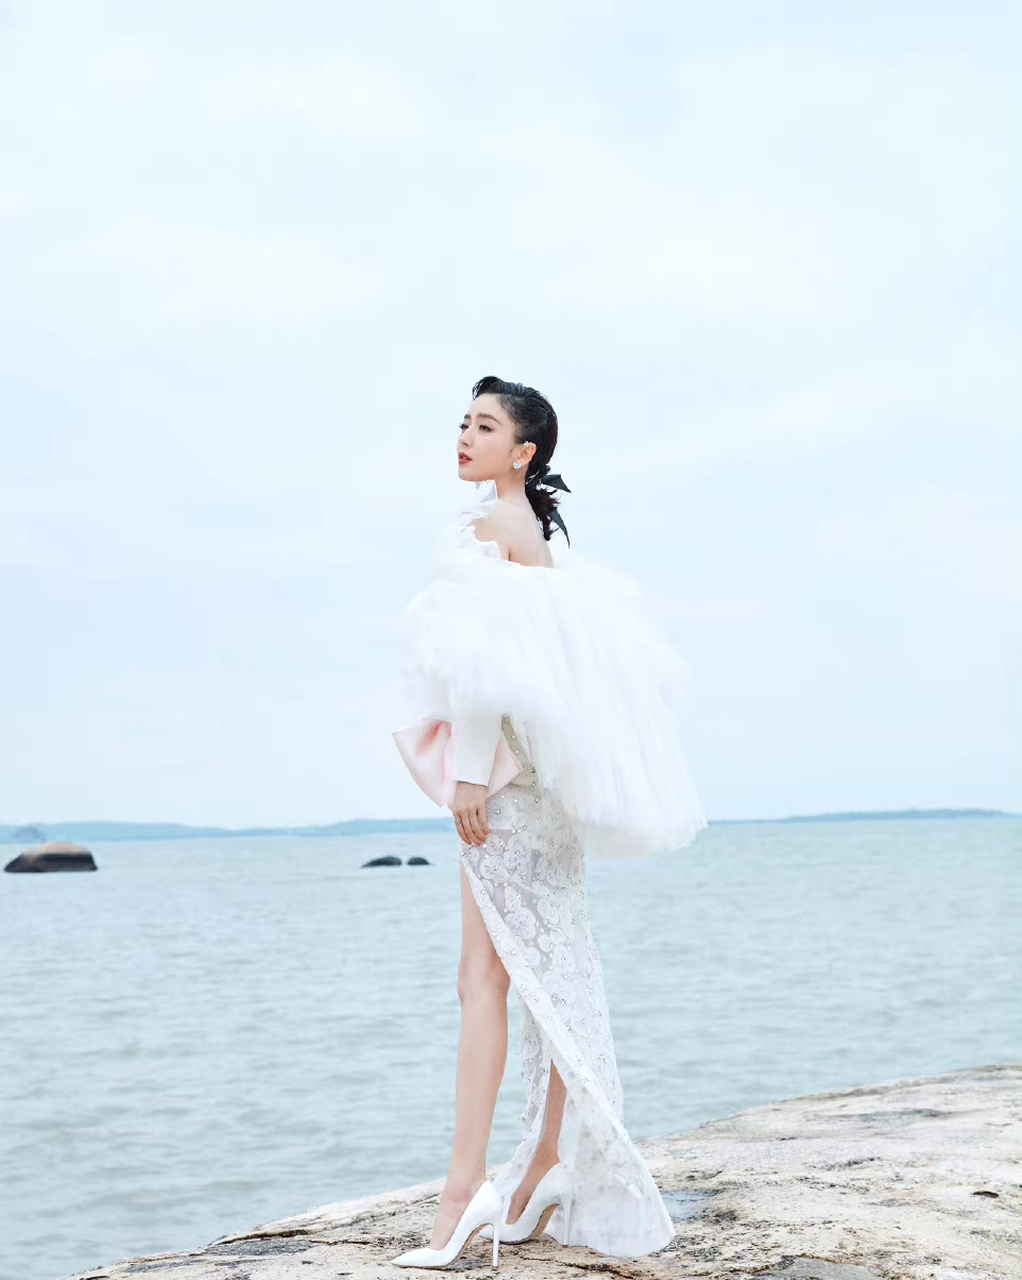 佟丽娅海边写真,纯白色开叉裙风情万种